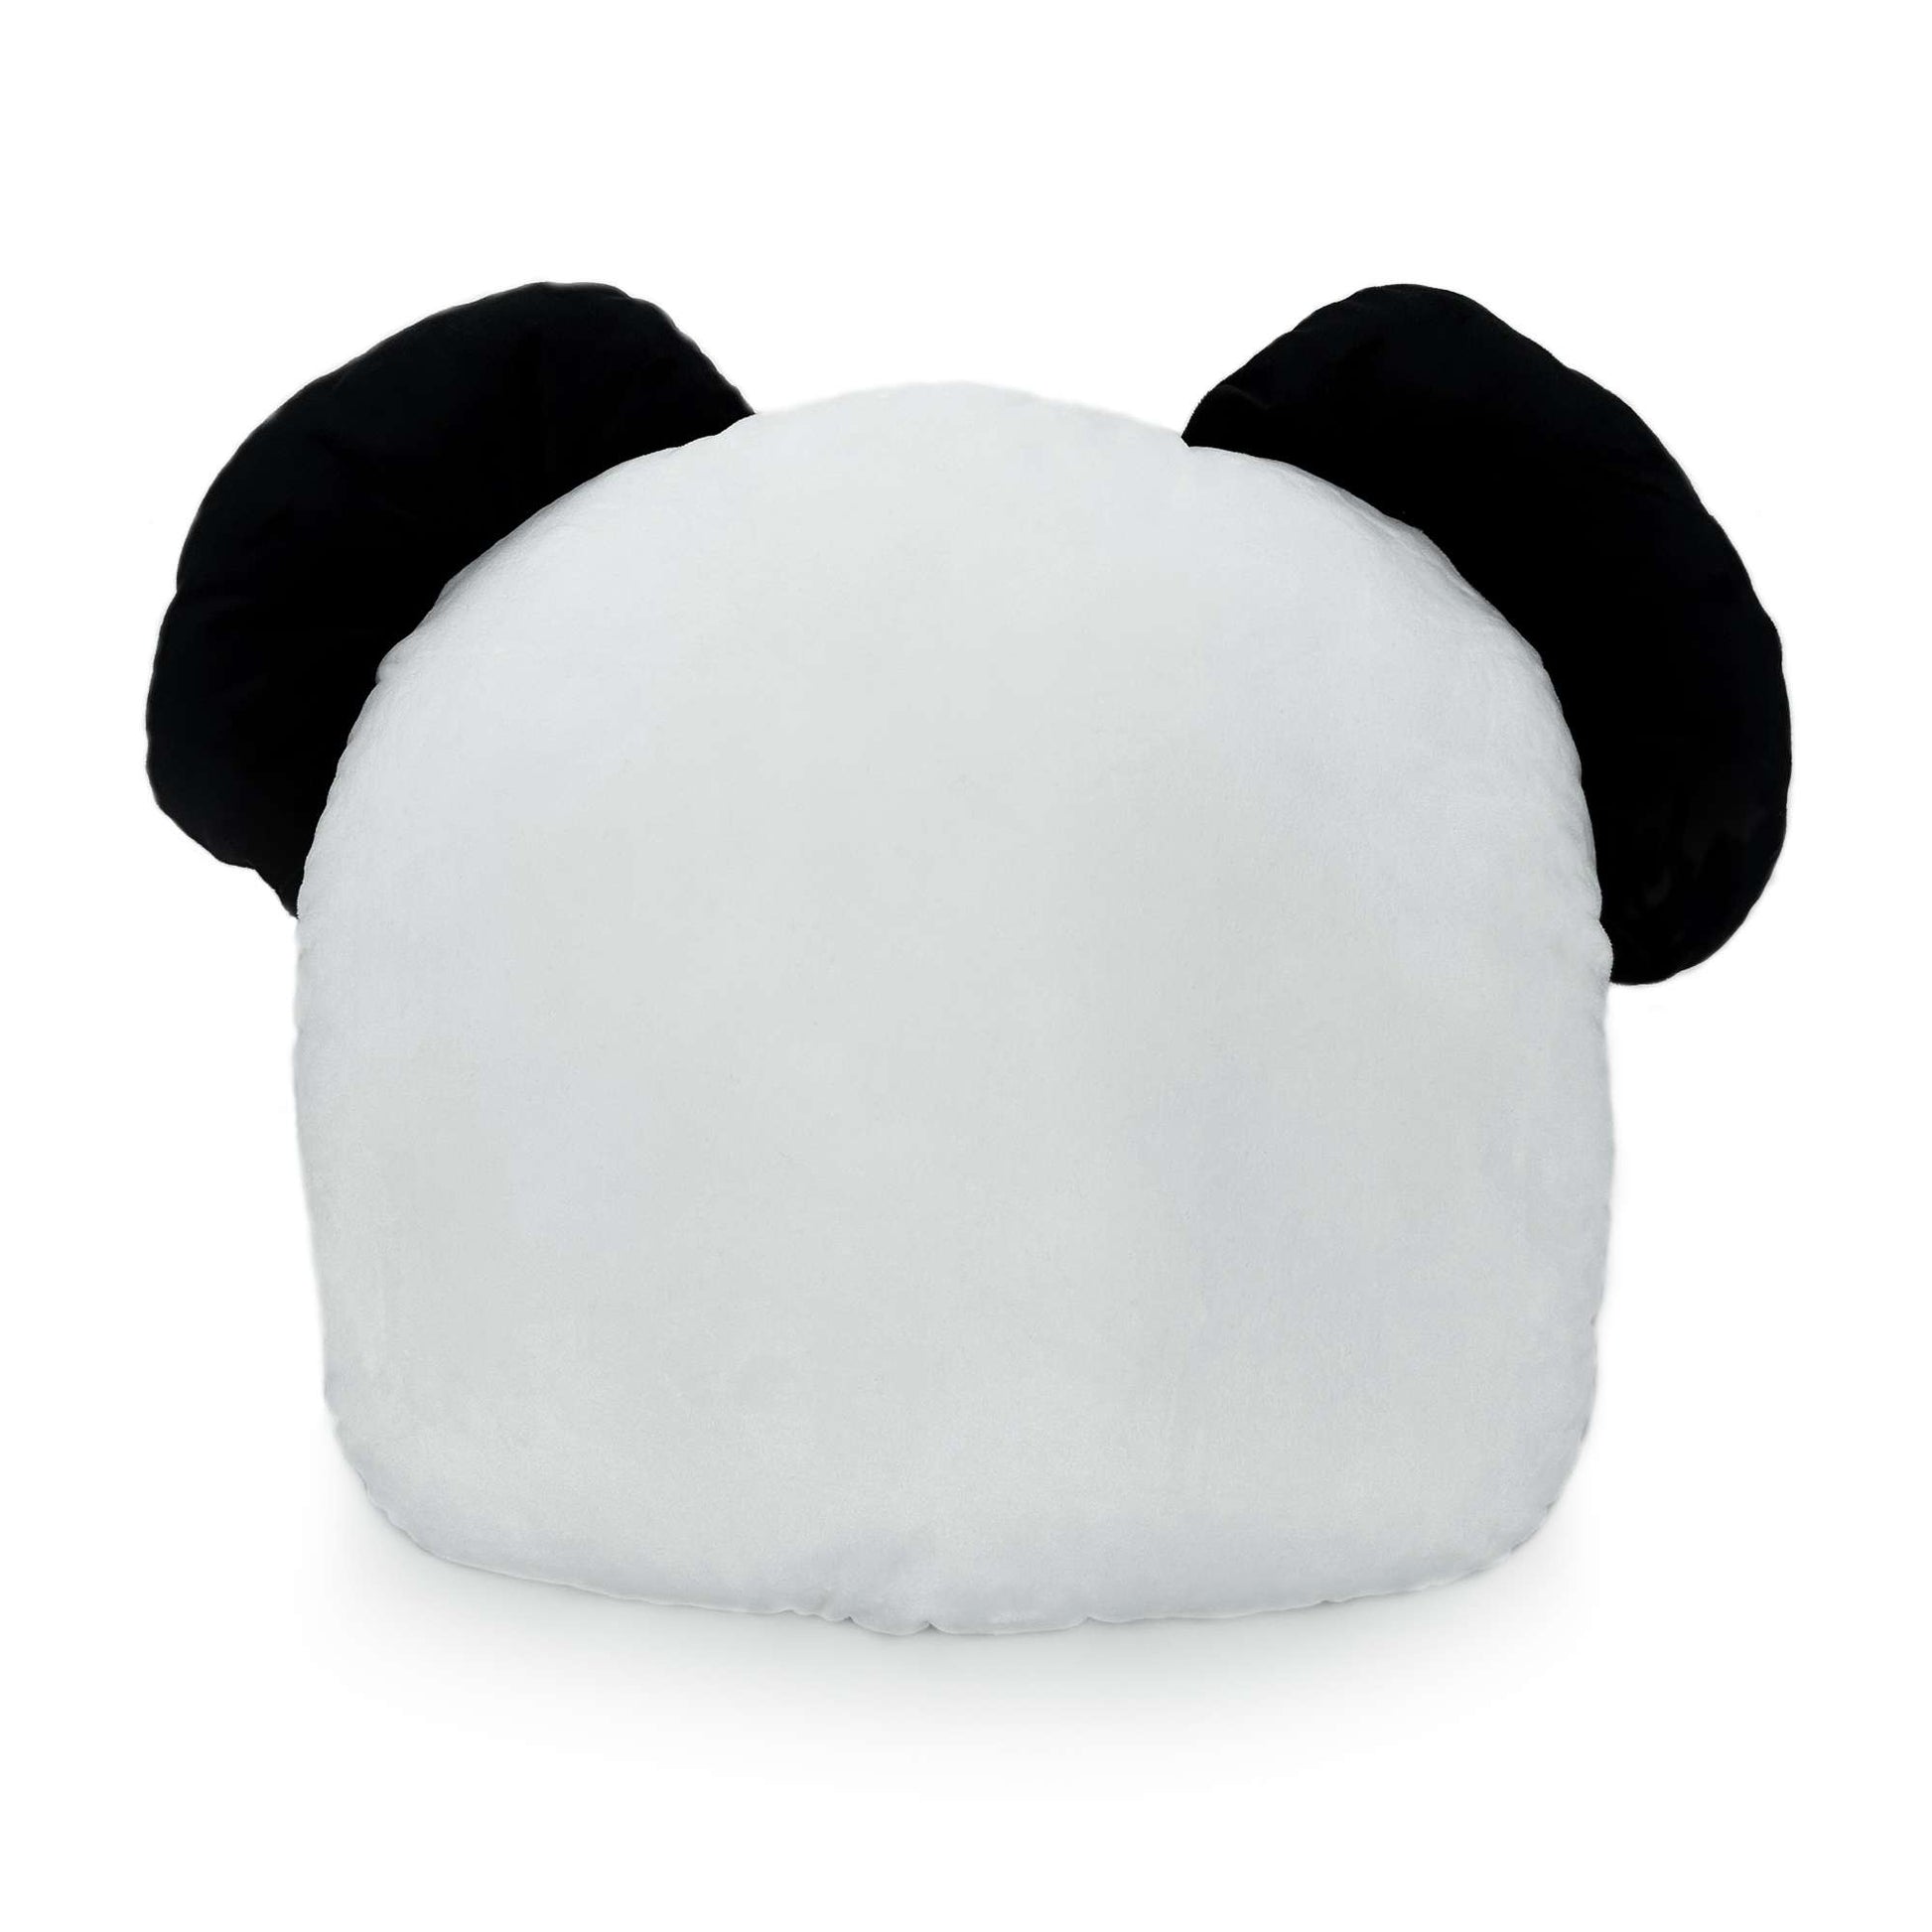 back panda skeleton Pillow